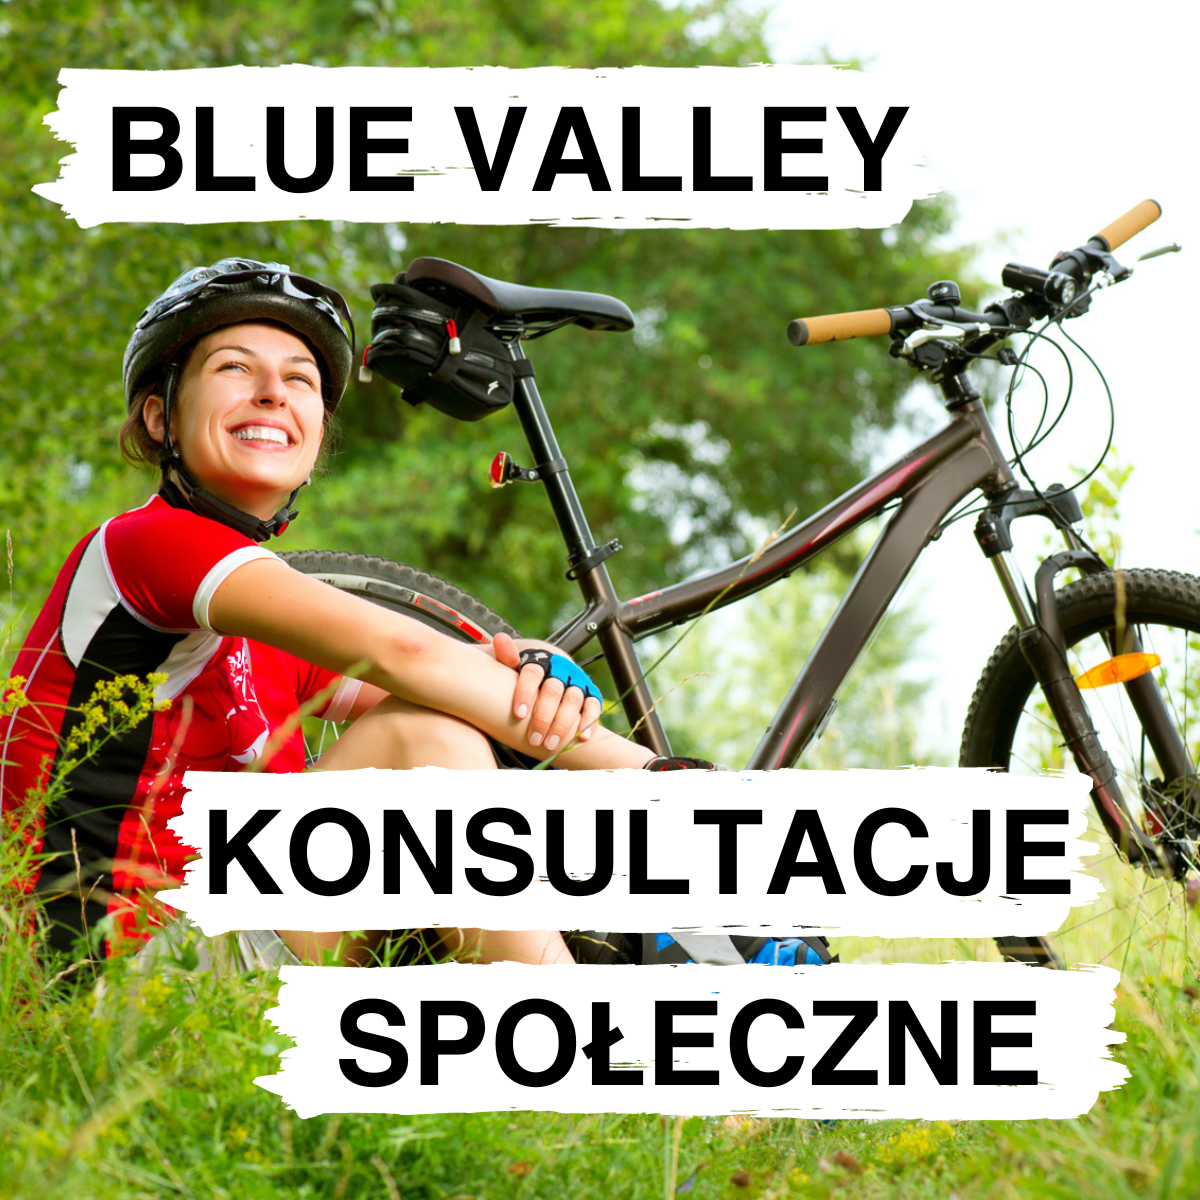 Konsultacje społeczne w sprawie projektu Blue Valley – Wiślanym Szlakiem